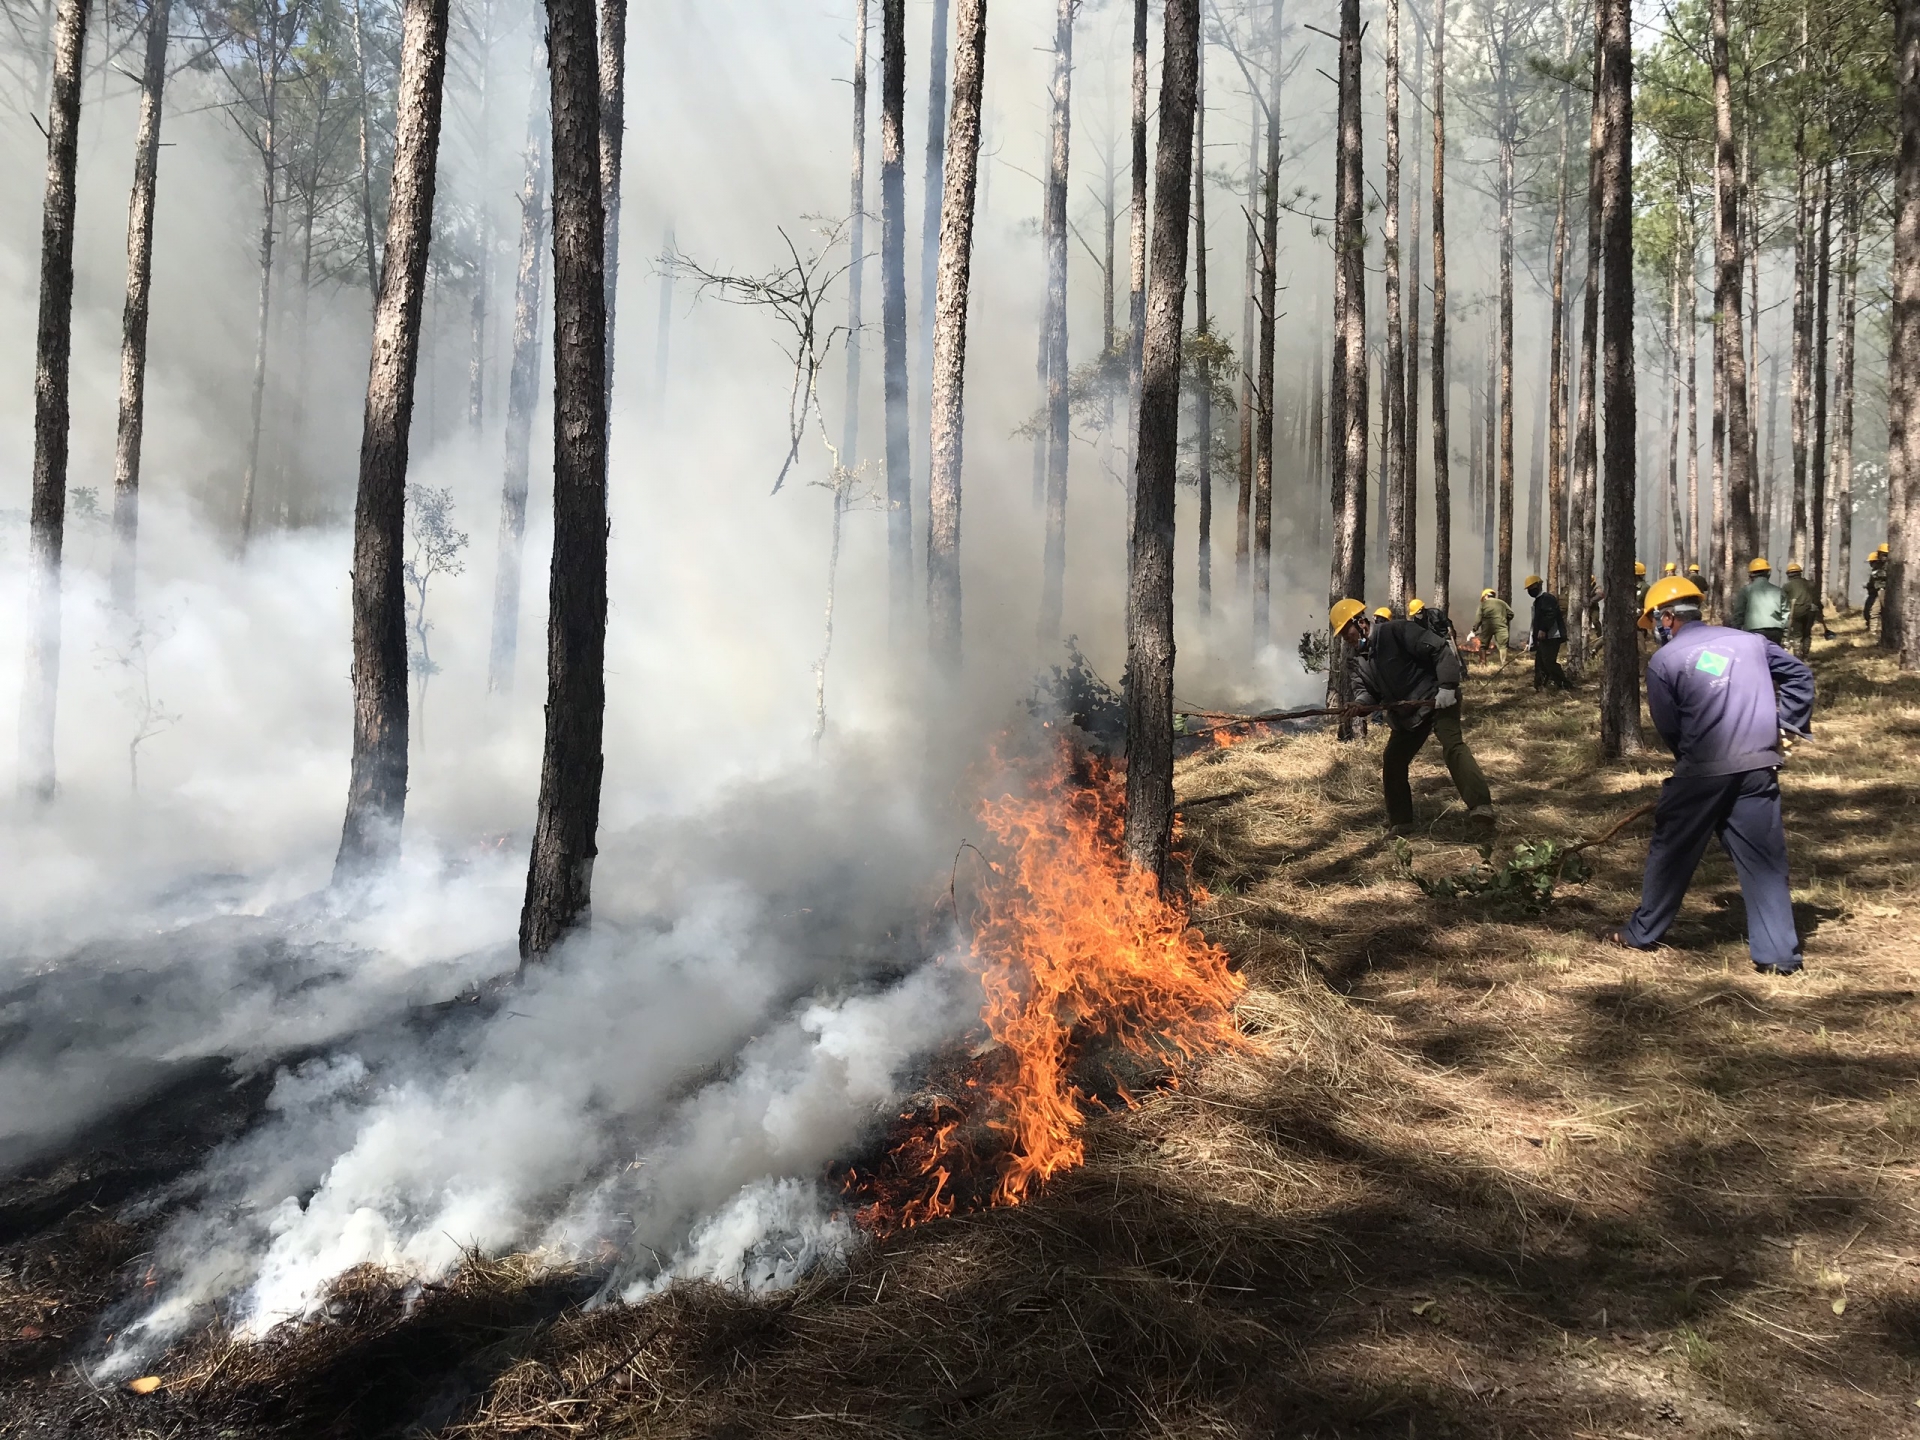 UBND tỉnh yêu cầu tăng cường các giải pháp quản lý bảo vệ rừng và phòng cháy chữa cháy rừng